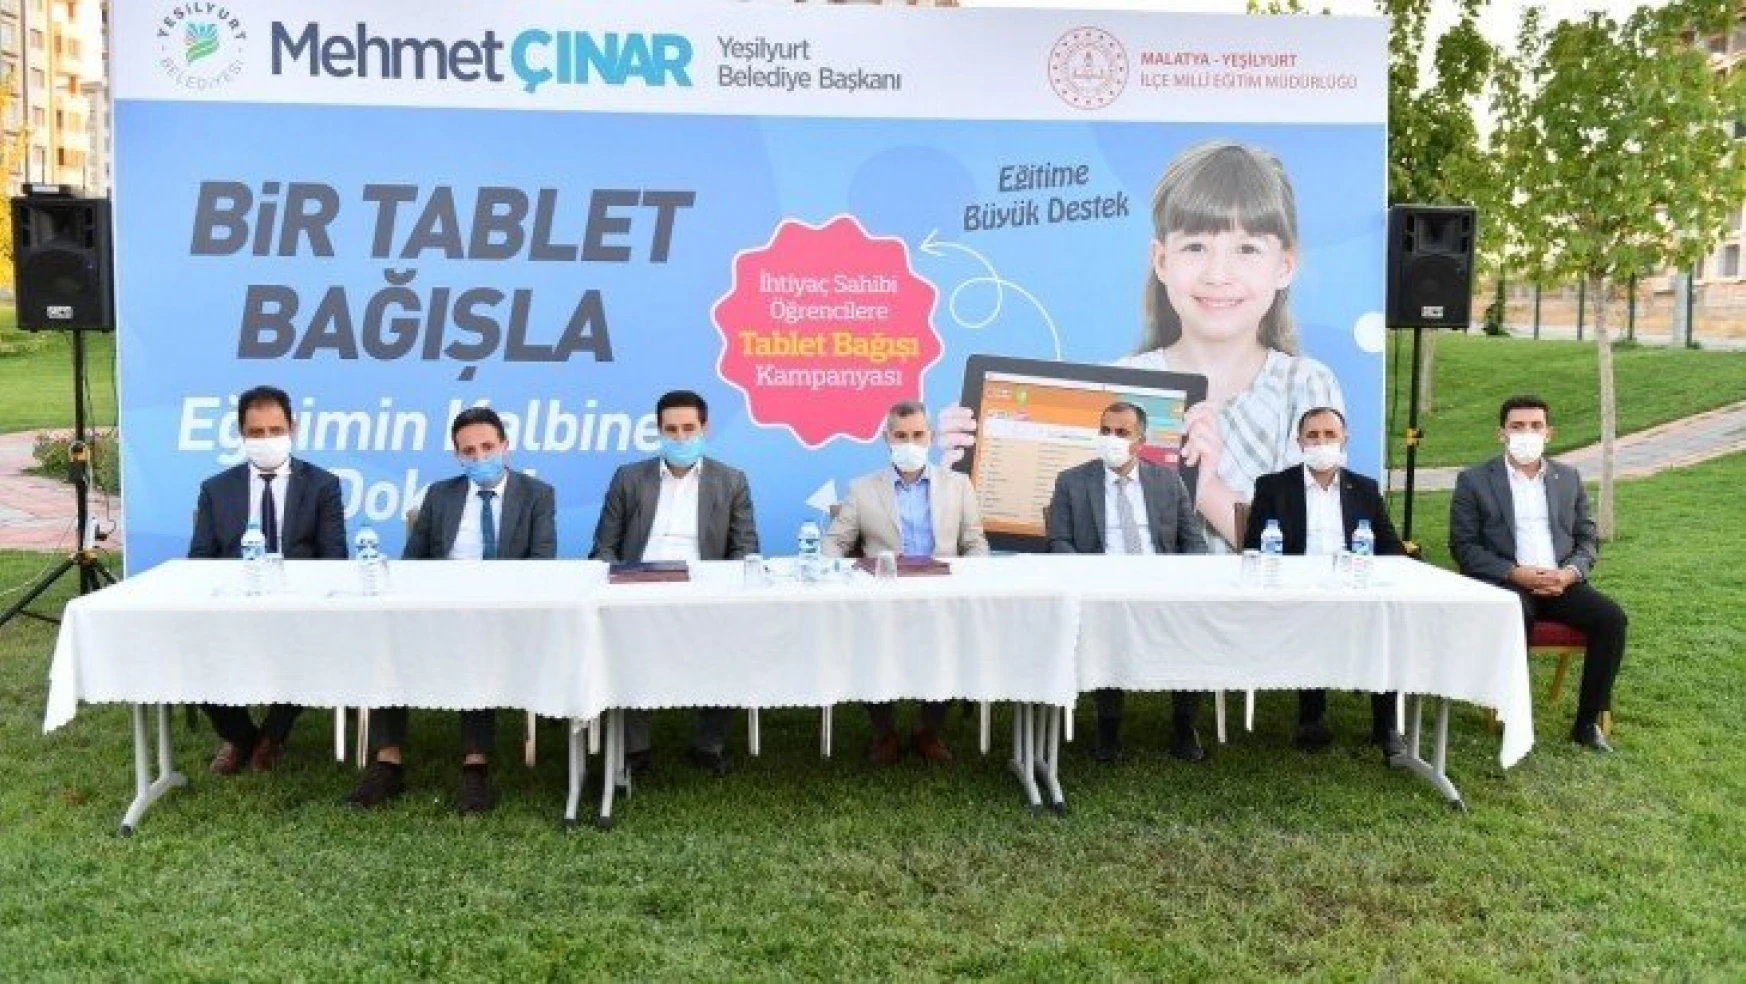 Yeşilyurt'ta Tablet bağış kampanyası başladı